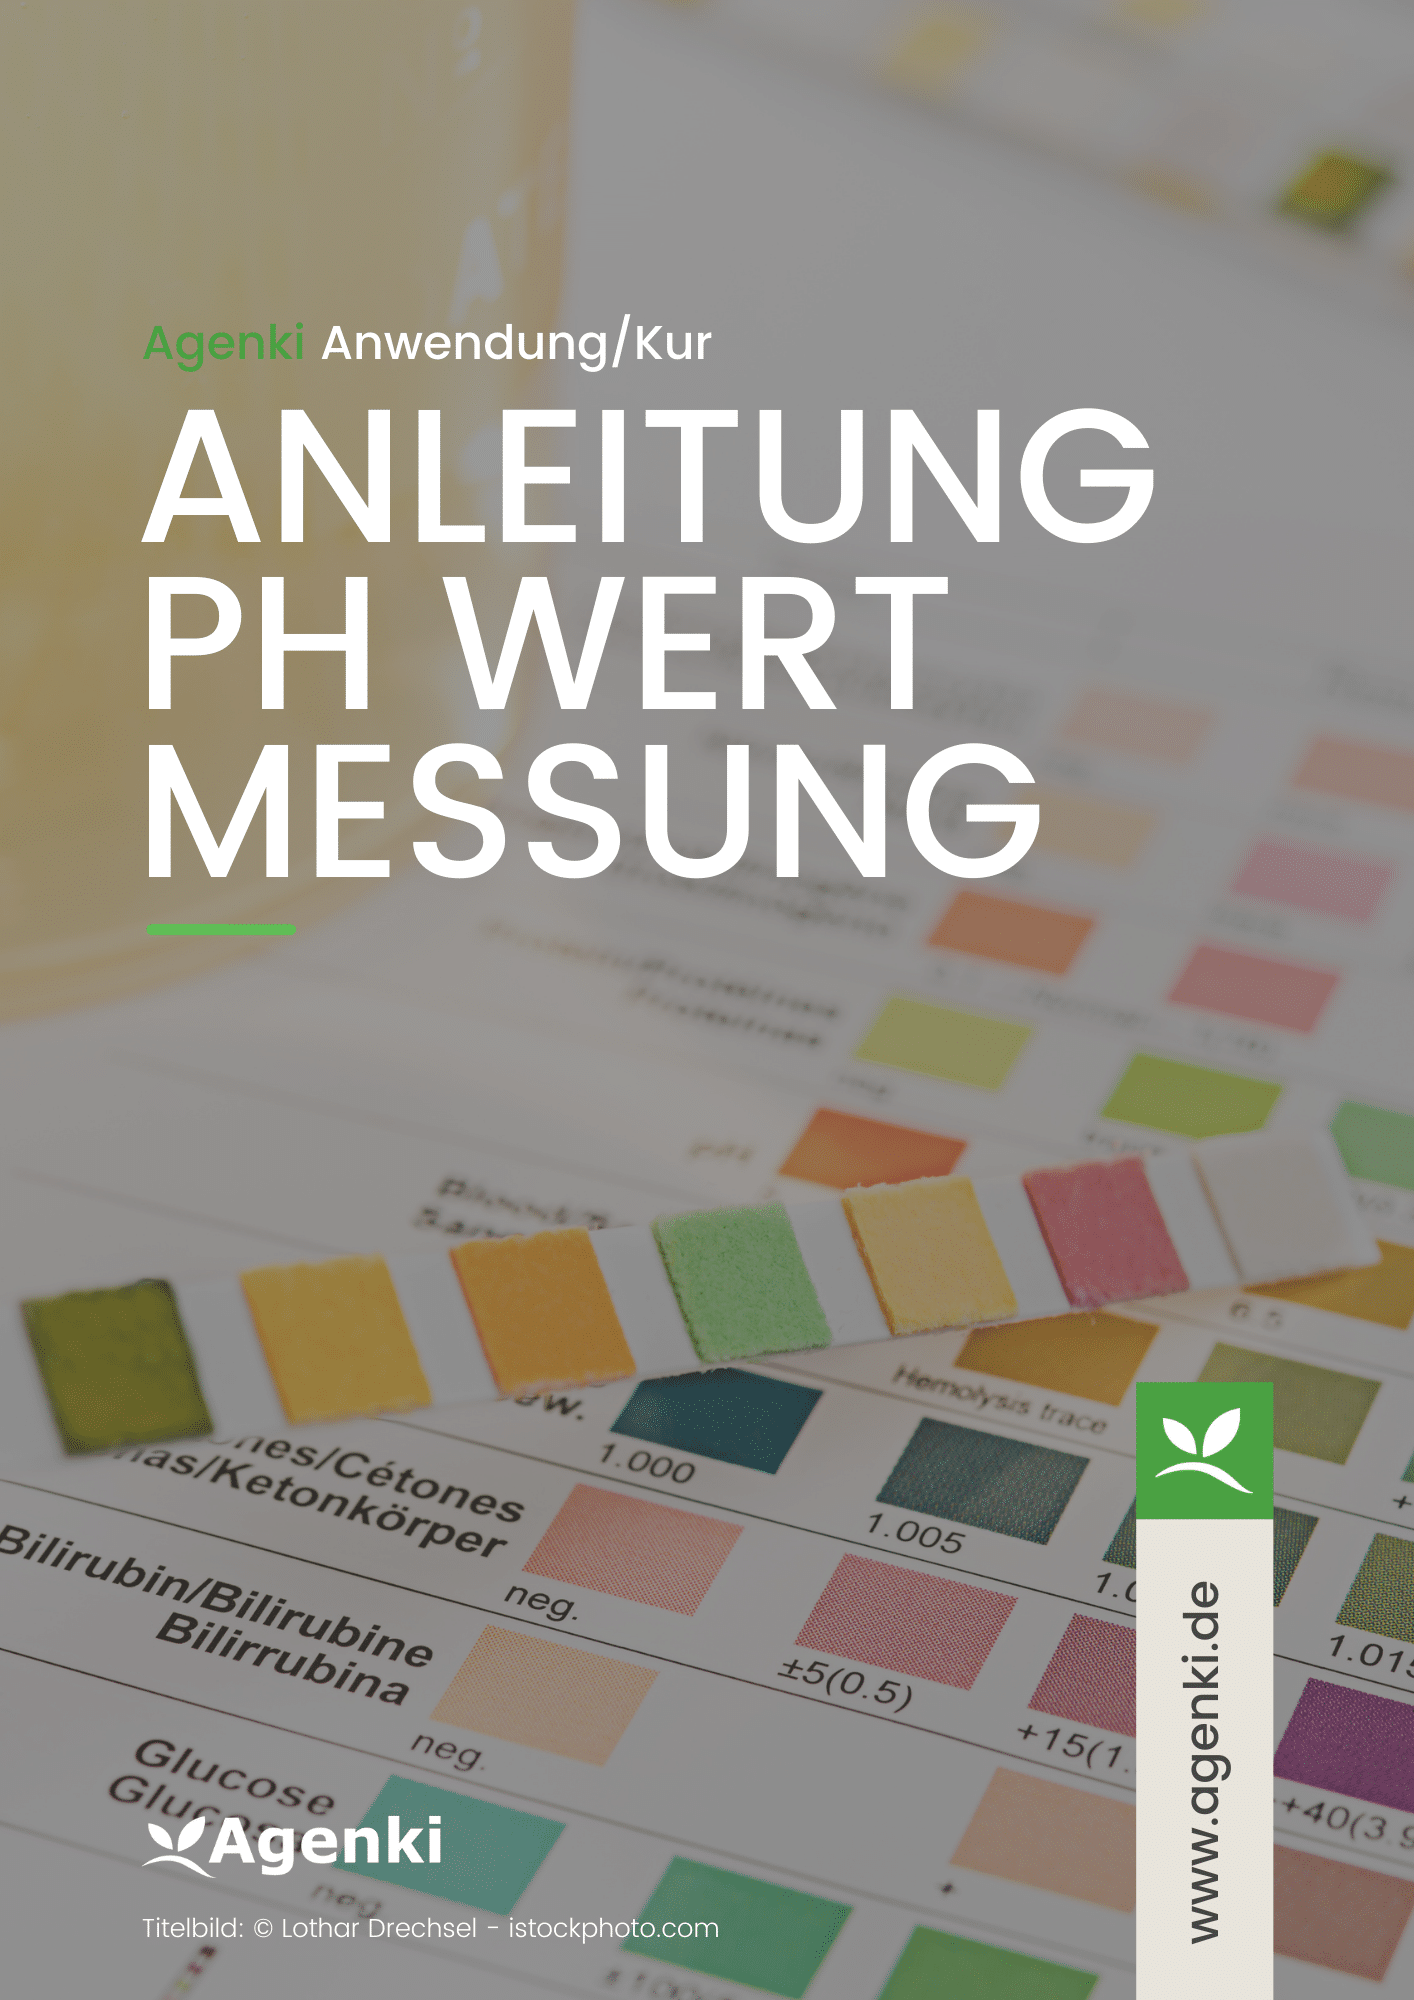 Anleitung pH Wert Messung (Anleitung) - Agenki